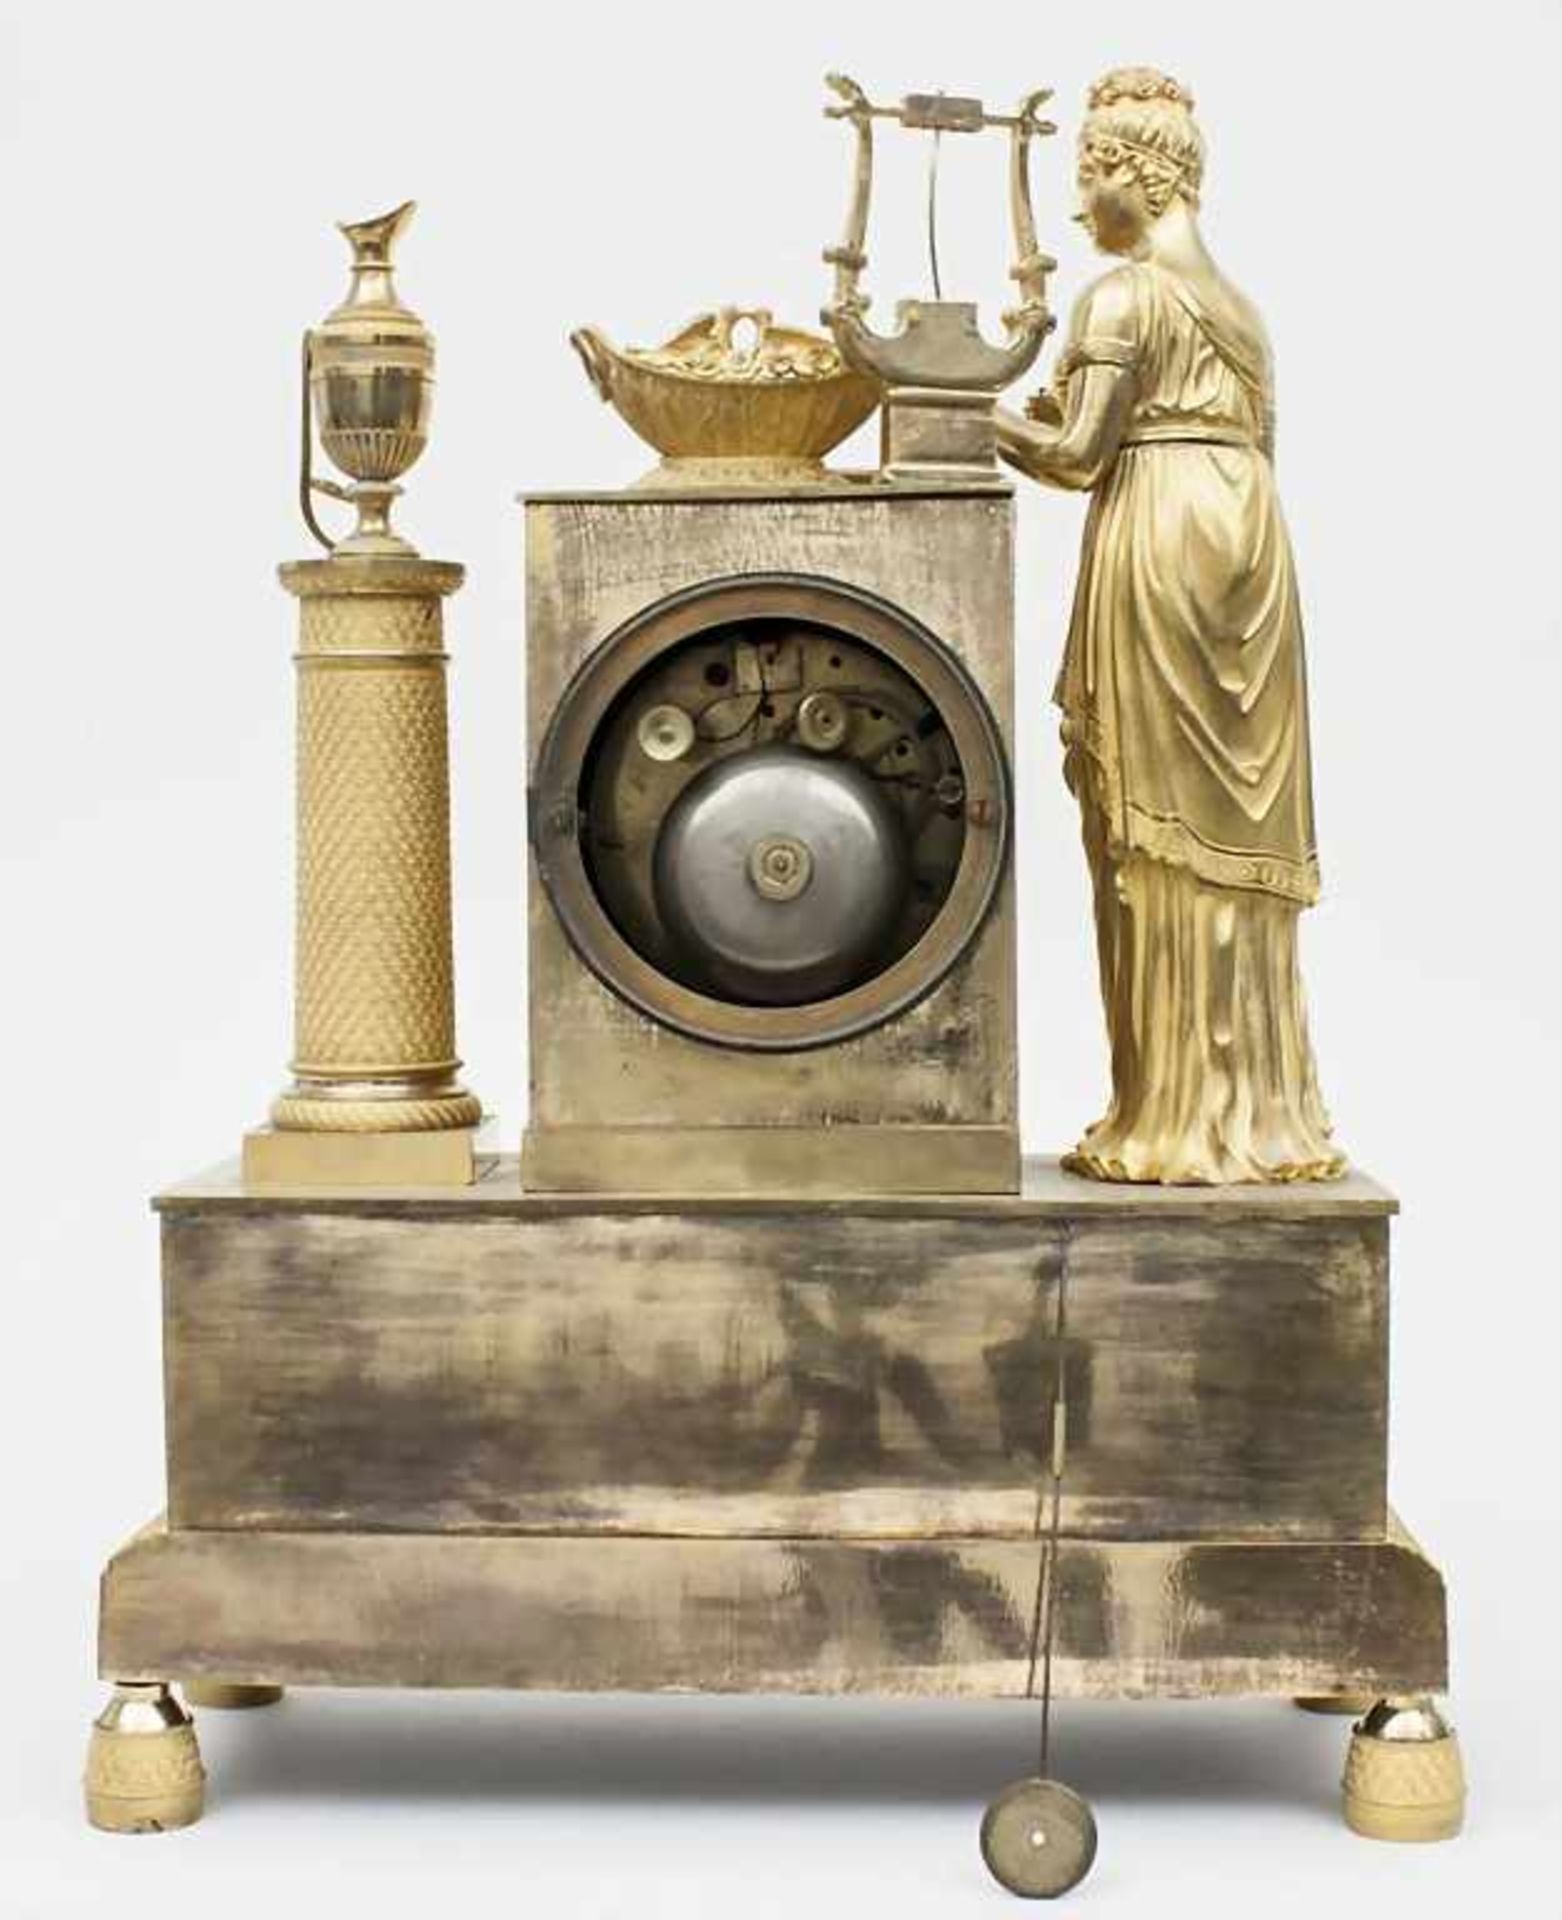 Pendule, Époque Restauration, Frankreich/France, ca. 1820 - Image 3 of 3